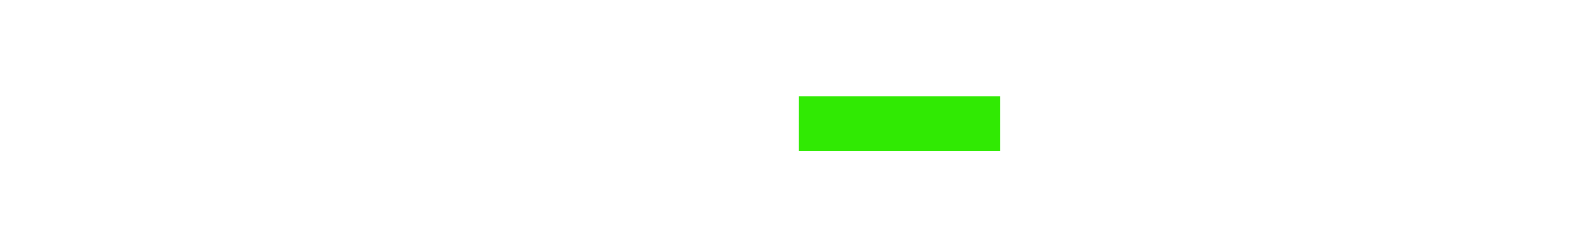 Haleon logo grand pour les fonds sombres (PNG transparent)